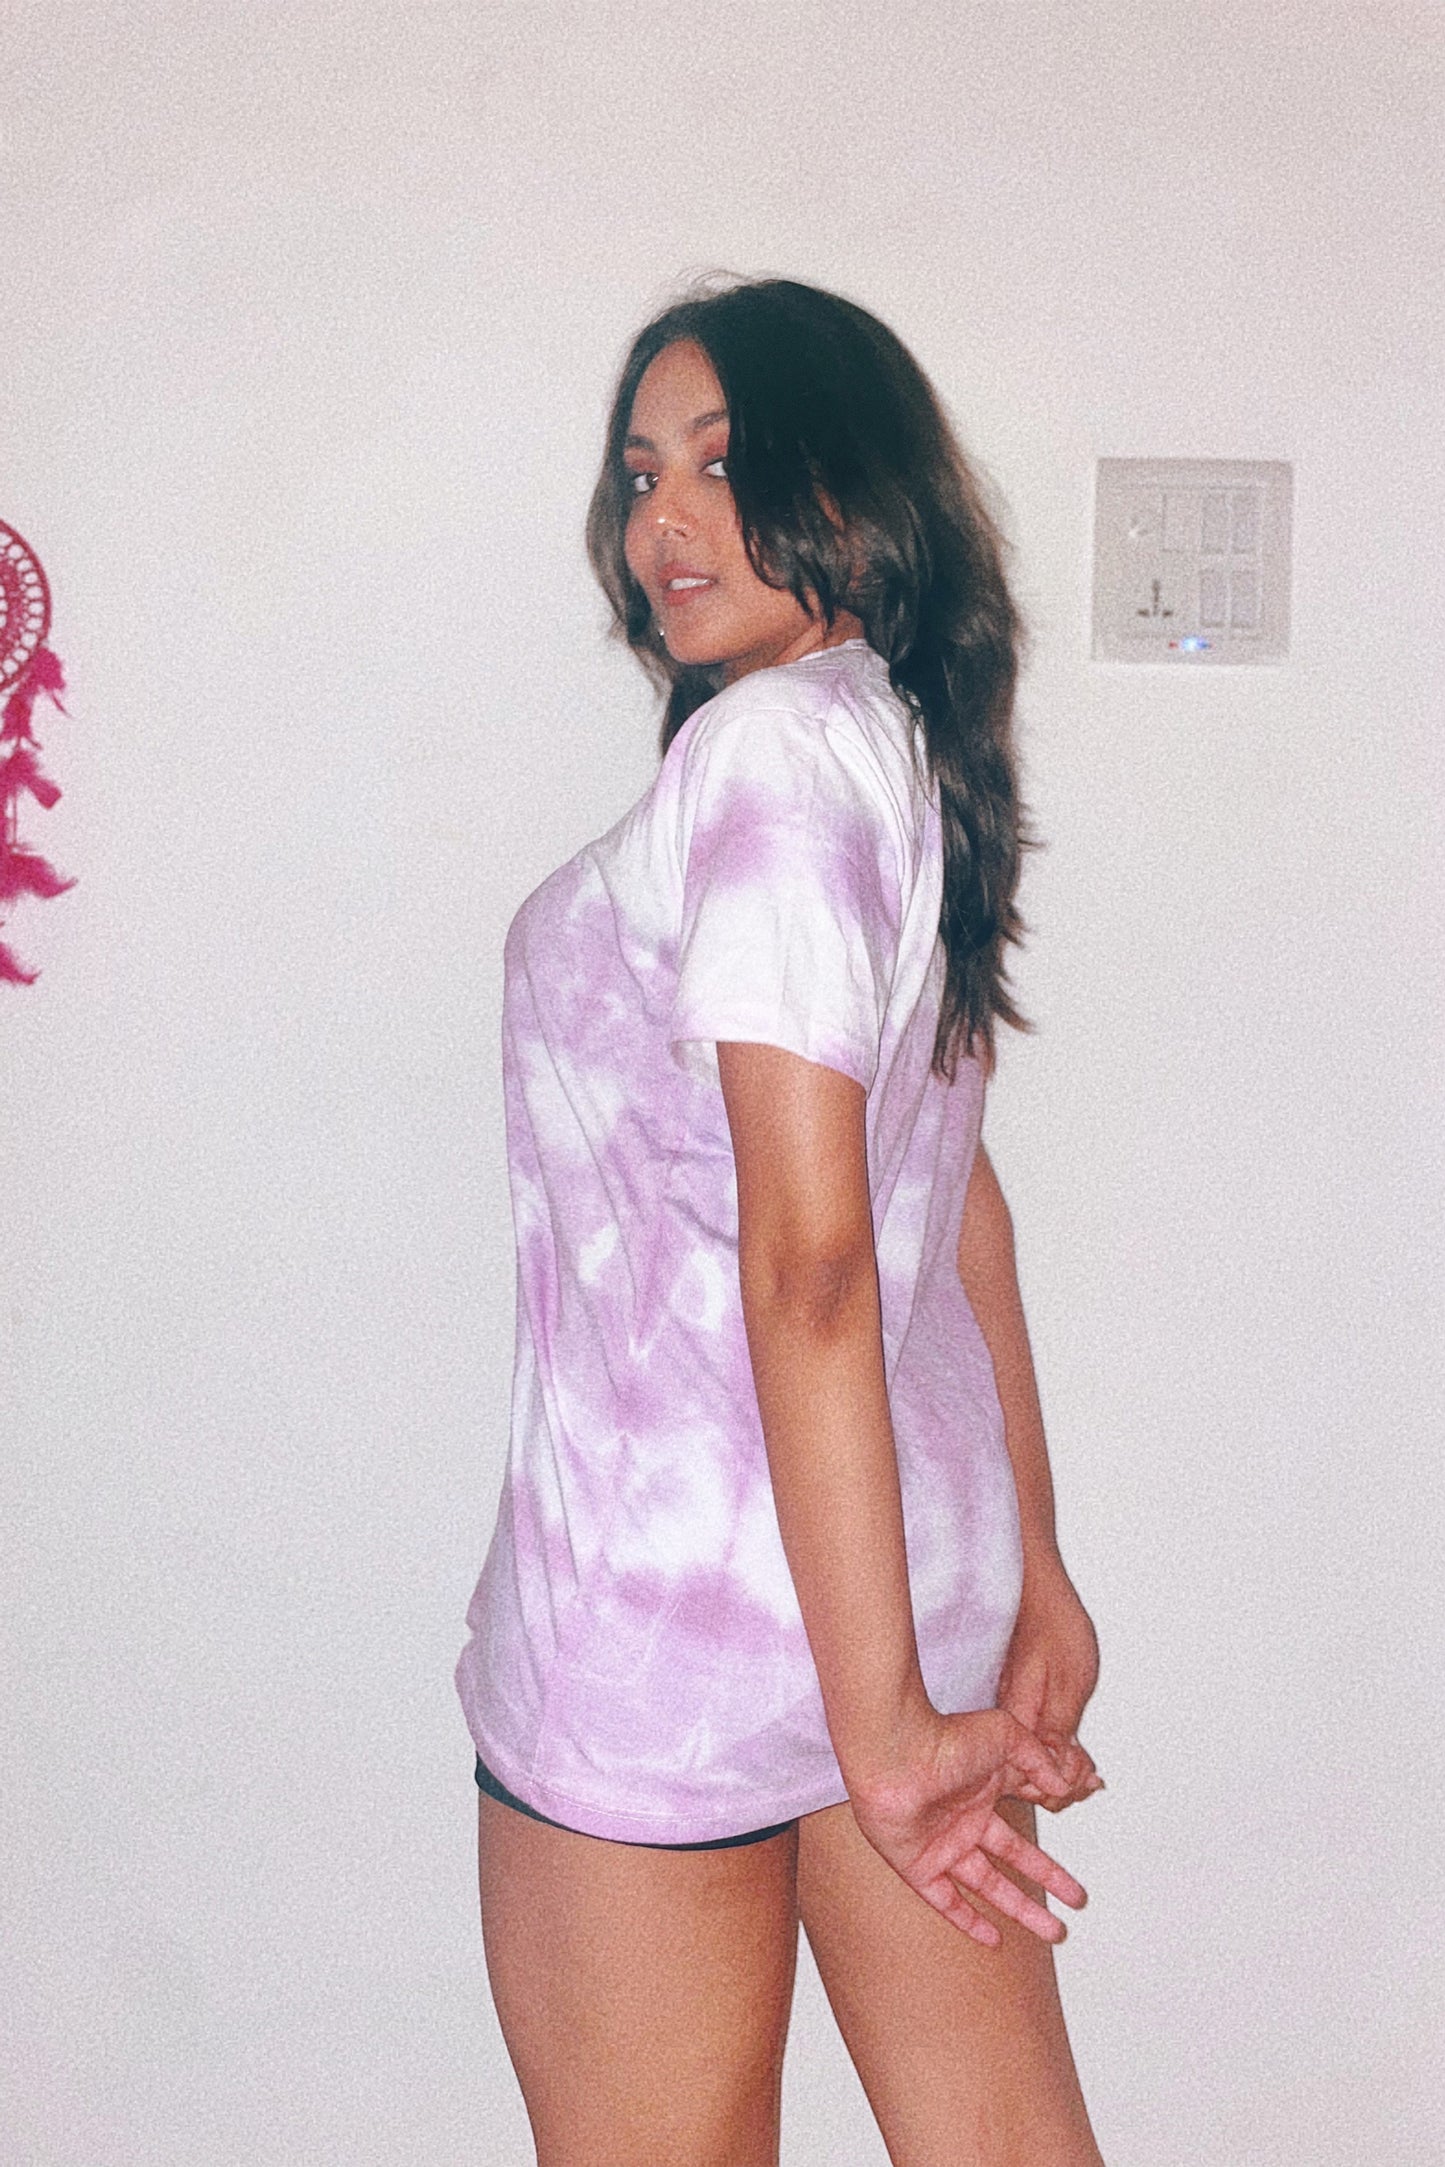 Regular Fit Lavender Color Tie-dye-Patterned Half Sleeve T-shirt (Unisex)